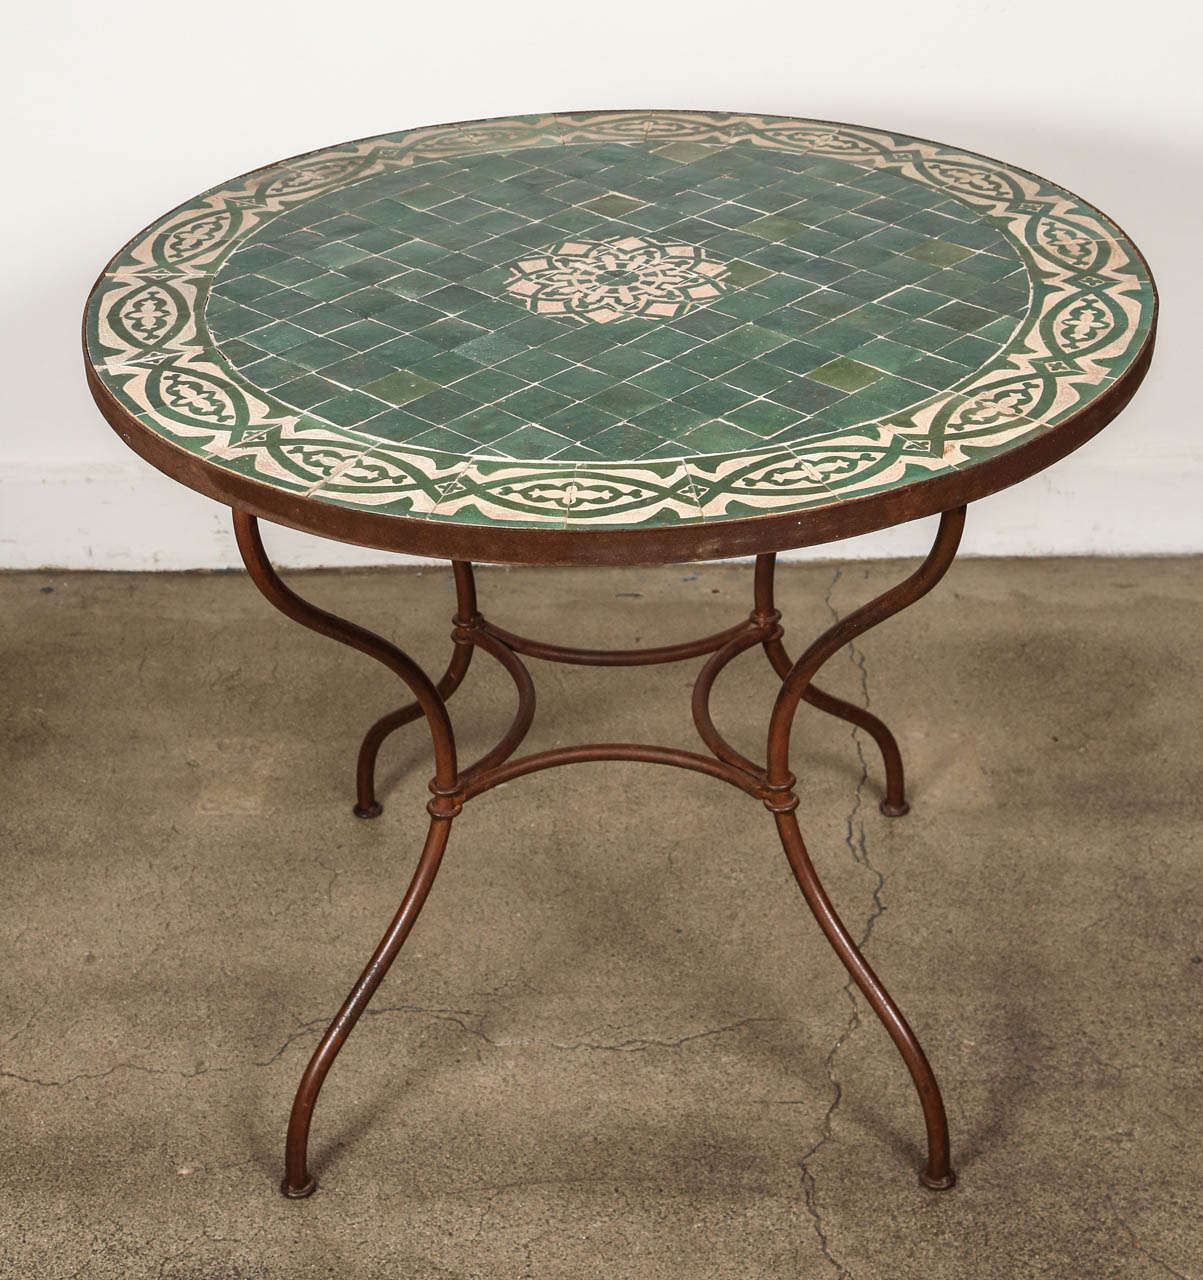 Moroccan mosaic tile table top diameter 36